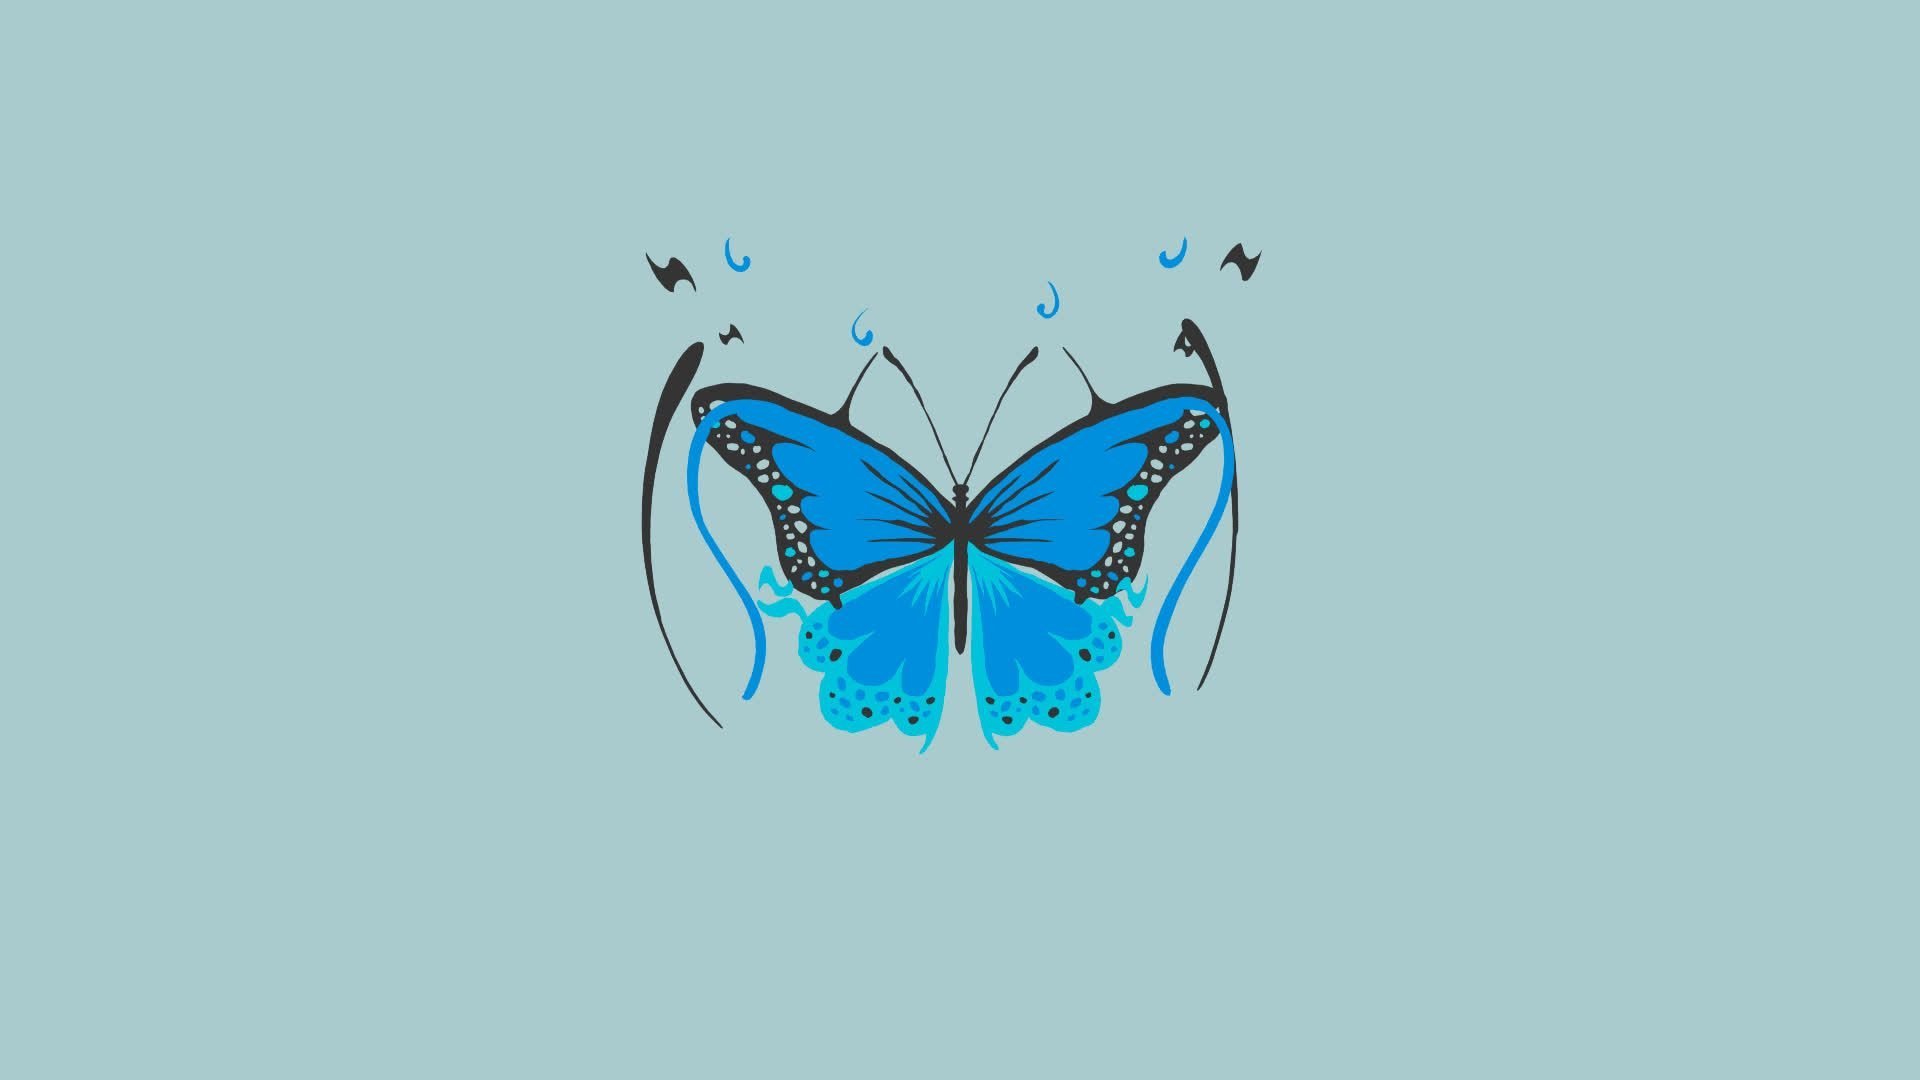 Обои на телефон 24. Красивый фон с бабочками. Красивые обои с бабочками. Бирюзовые бабочки. Голубой фон с бабочками.